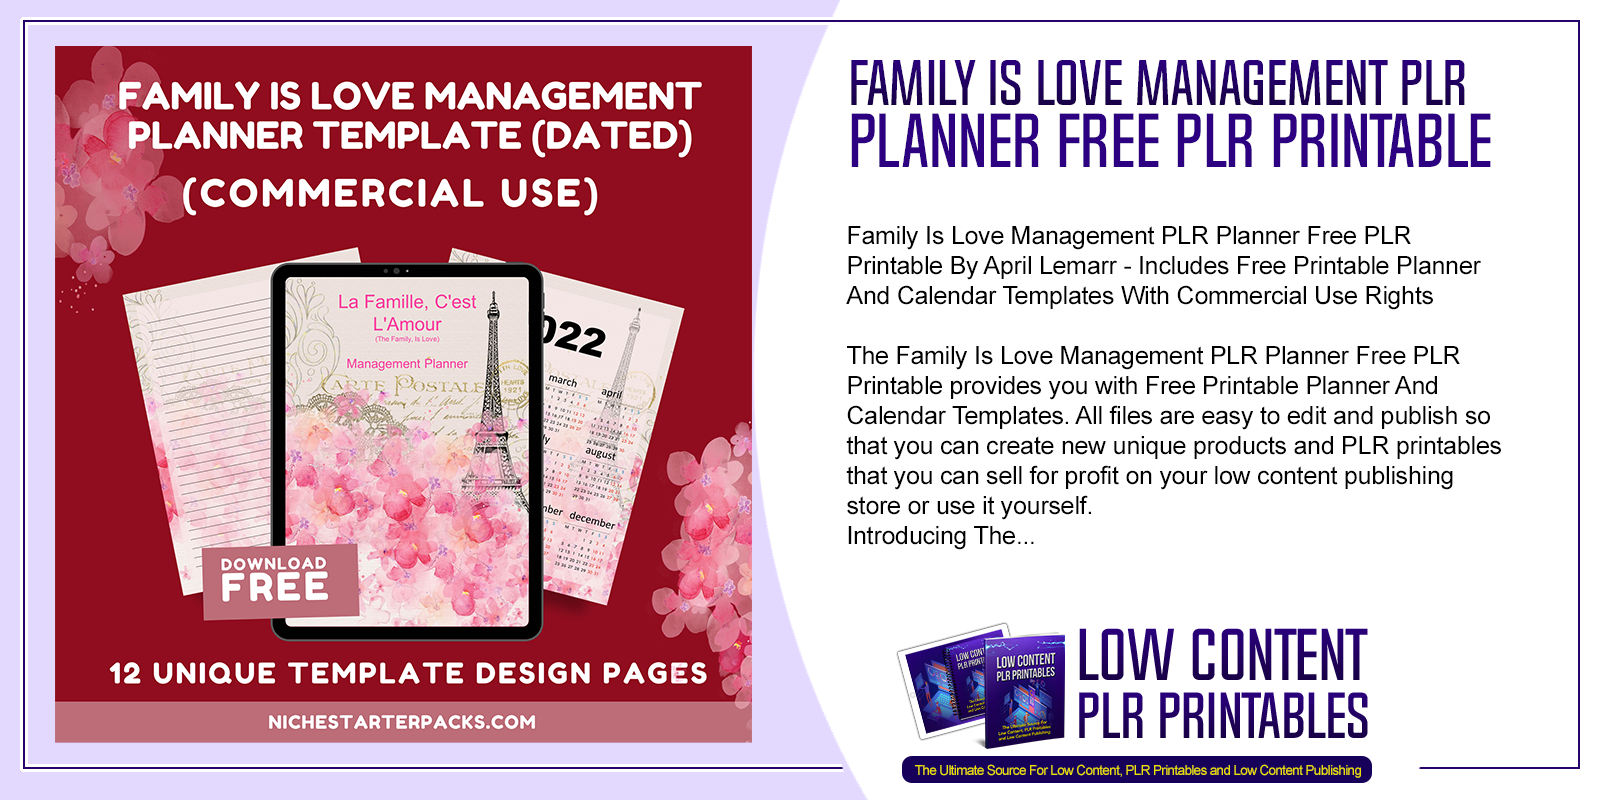 Family Is Love Management PLR Planner Free PLR Printable